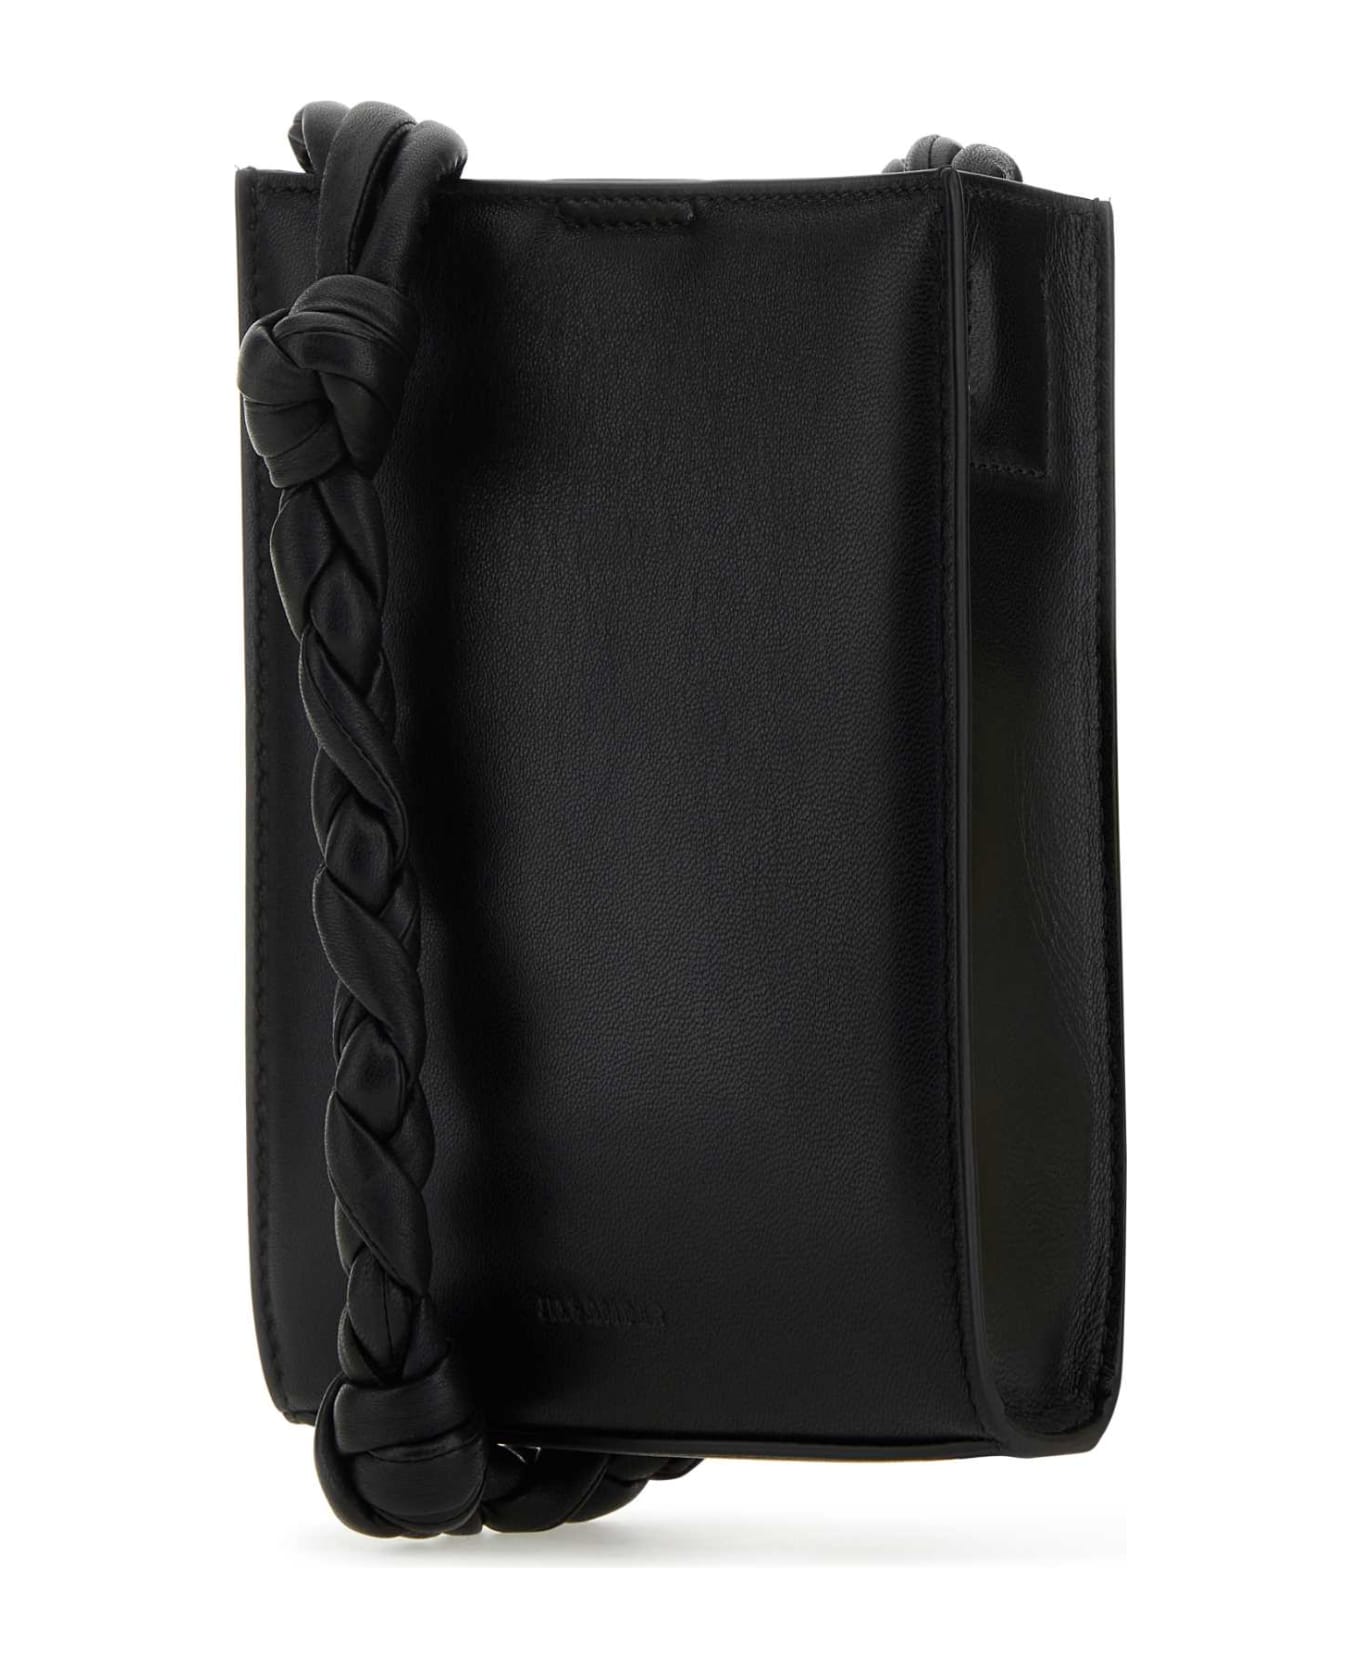 Jil Sander Black Leather Tangle Shoulder Bag - 001 クラッチバッグ